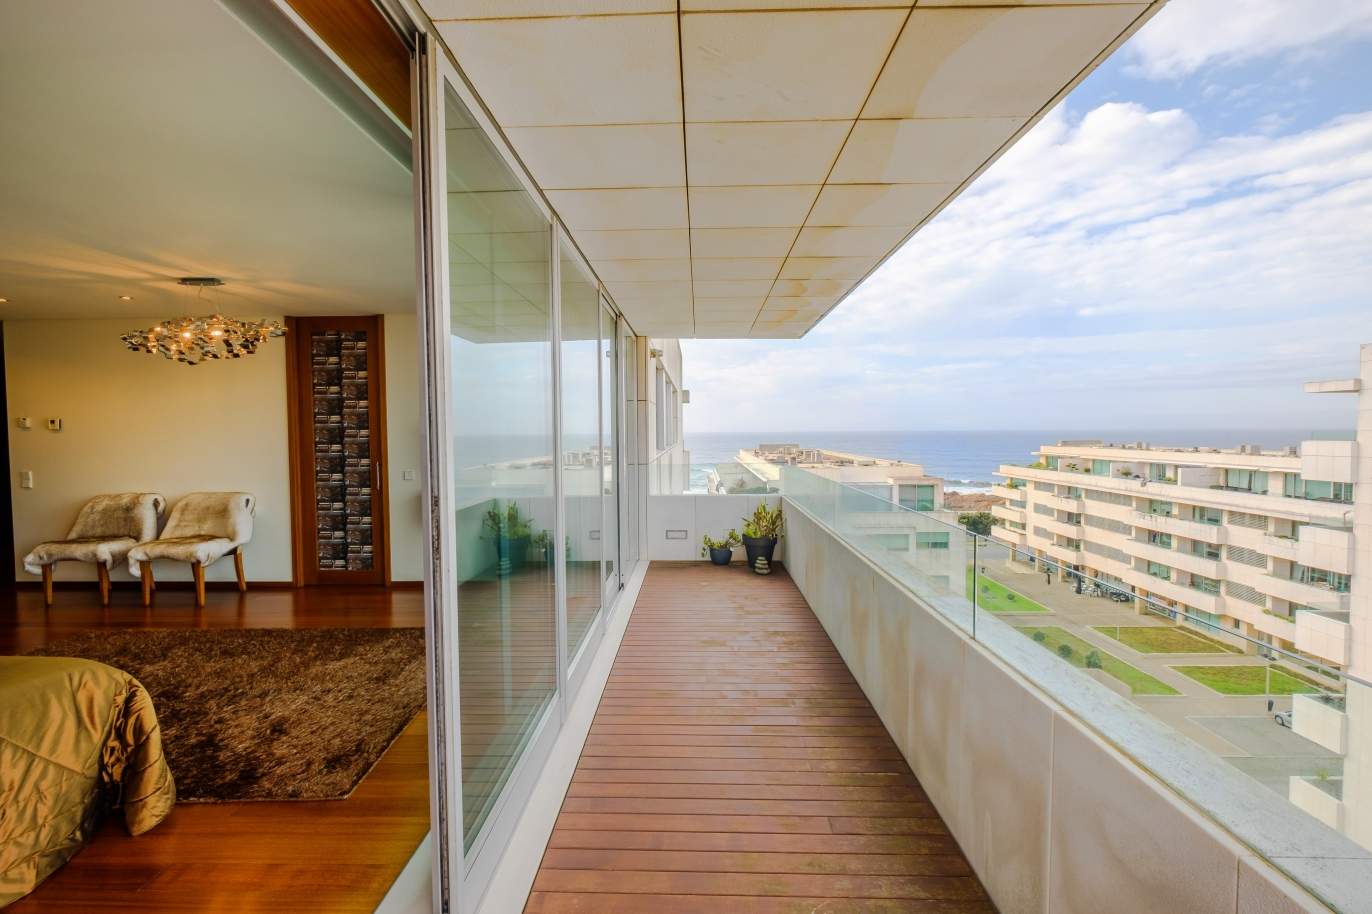 Venda de apartamento moderno, vistas mar, Leça Palmeira,Porto,Portugal_156136